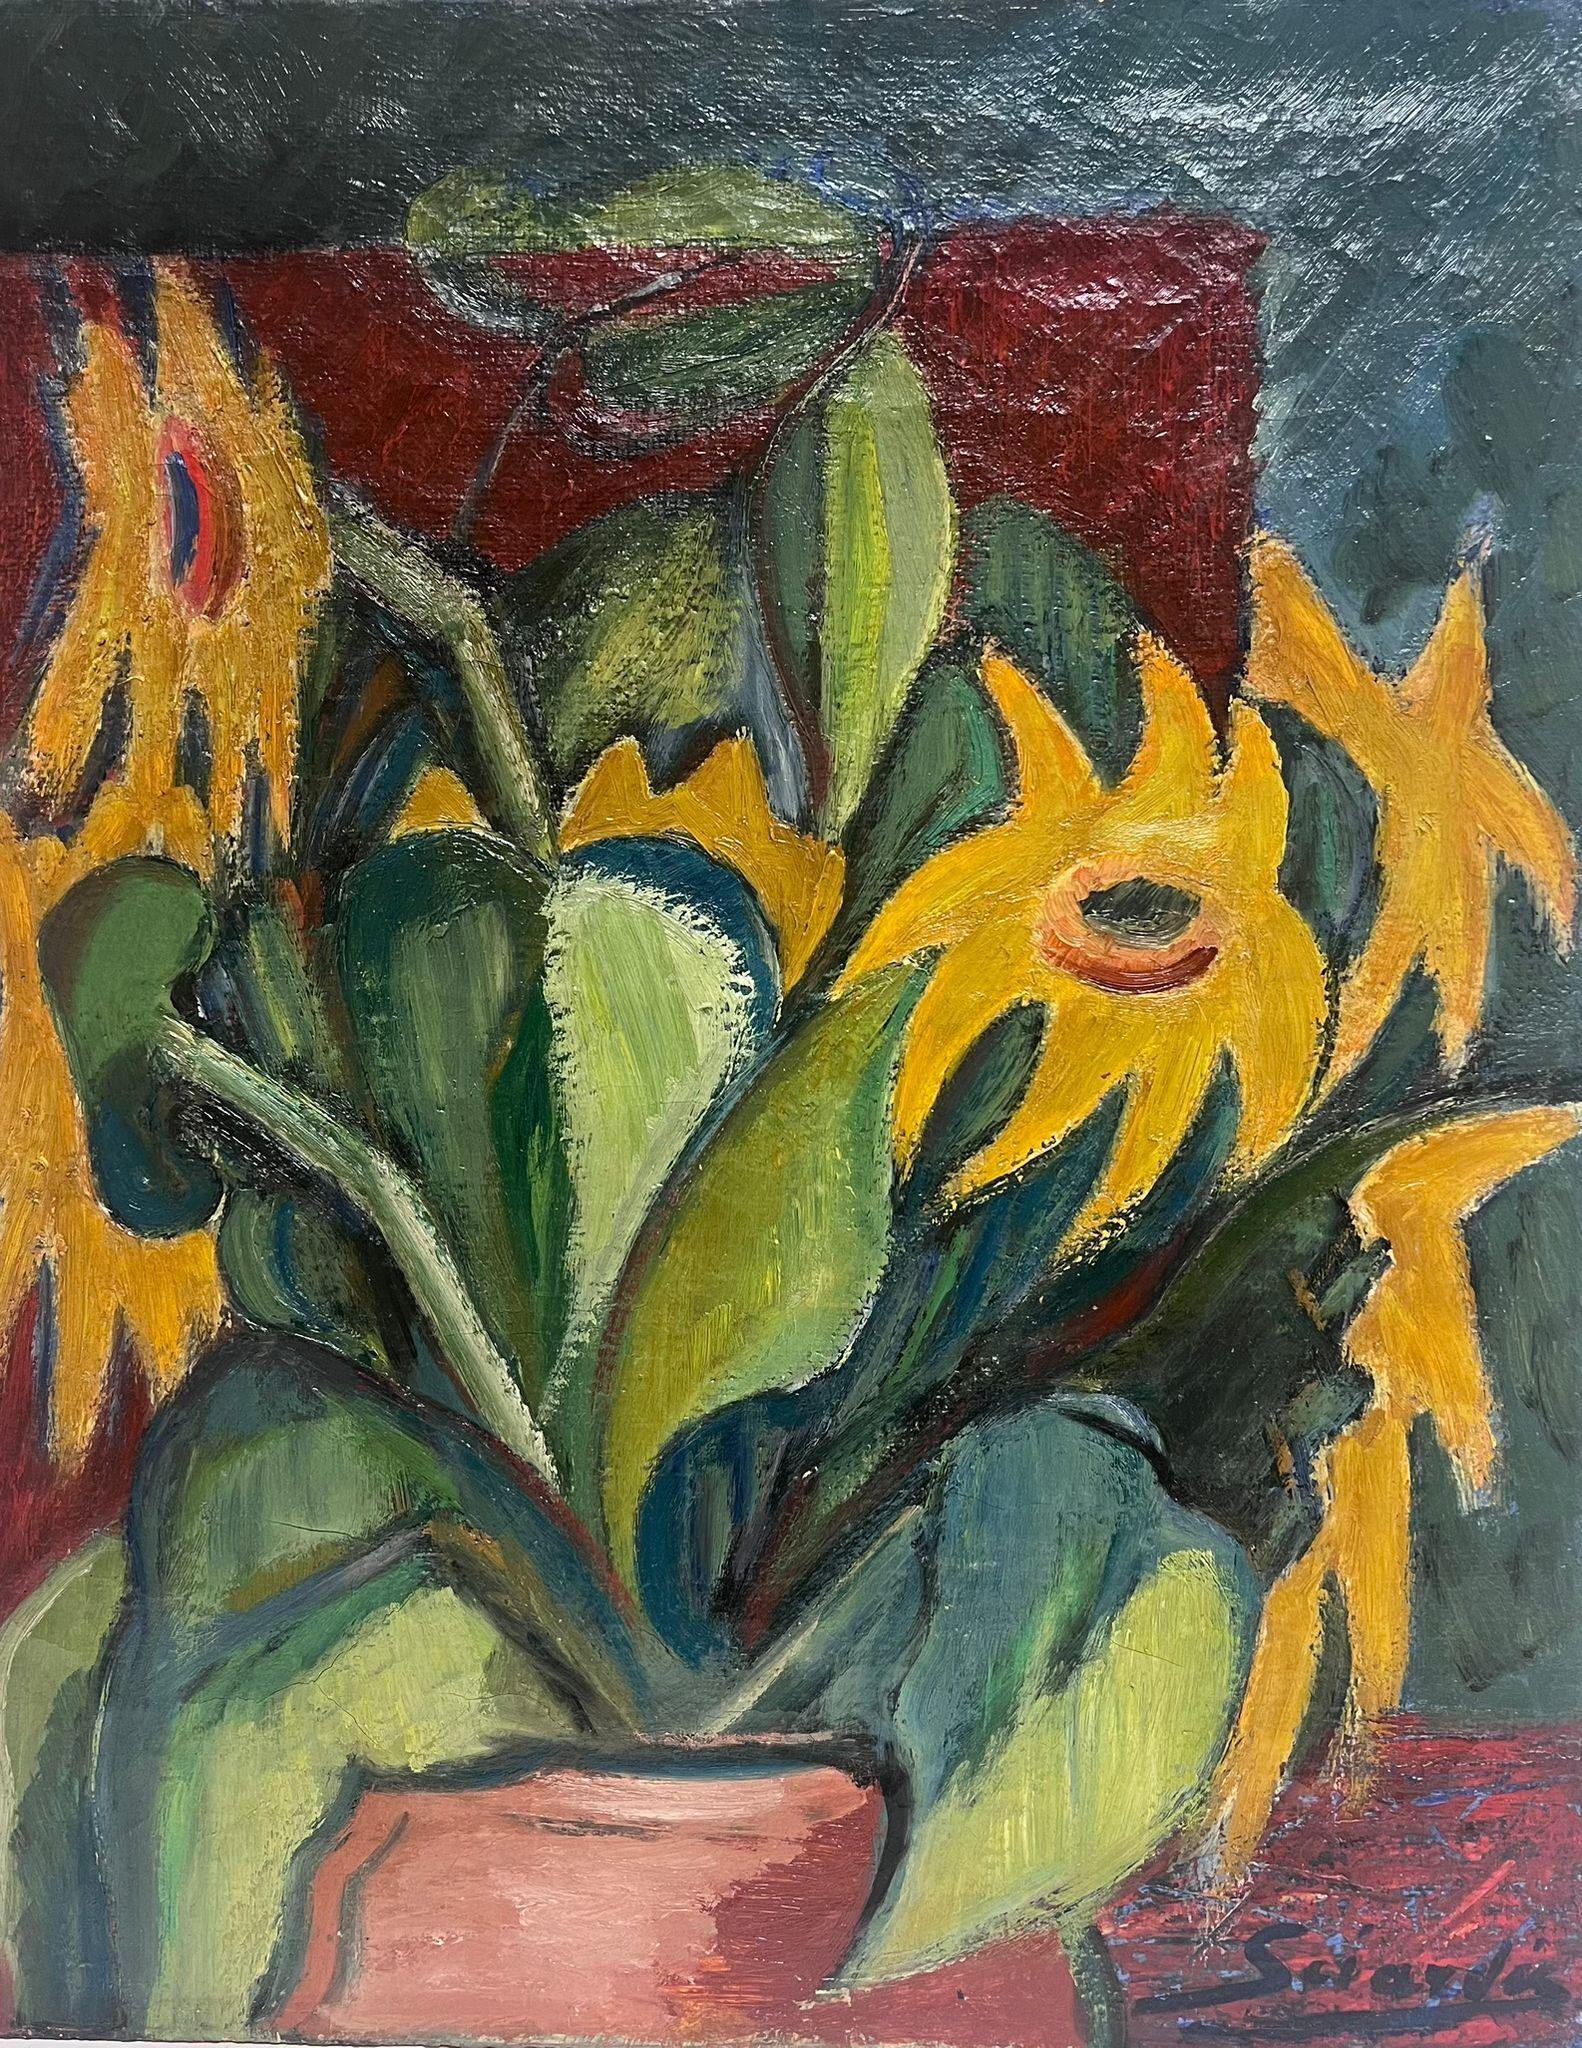 SunFlowers in Vase - Peinture à l'huile post-impressionniste française du milieu du 20e siècle, signée